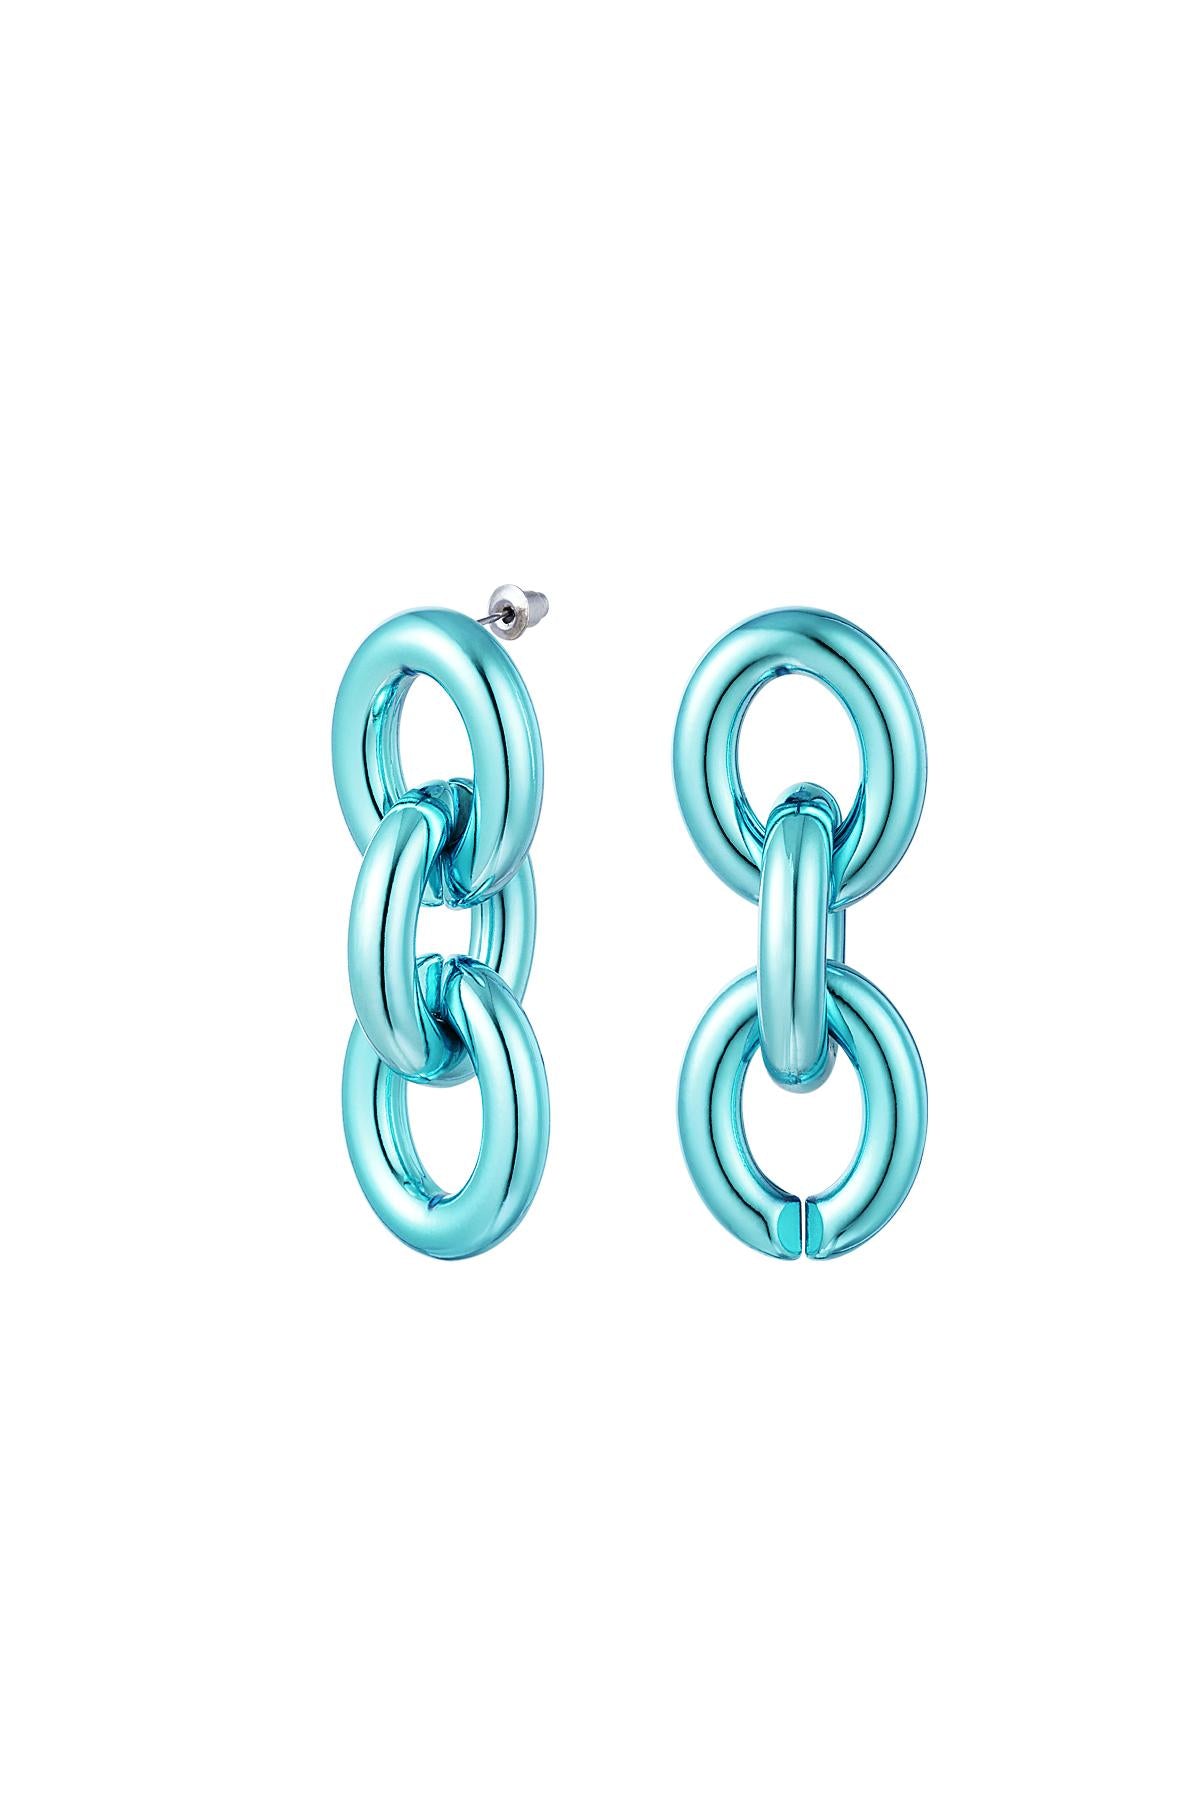 Thunder Egg - Metallic Blue Chunky Chain Earrings